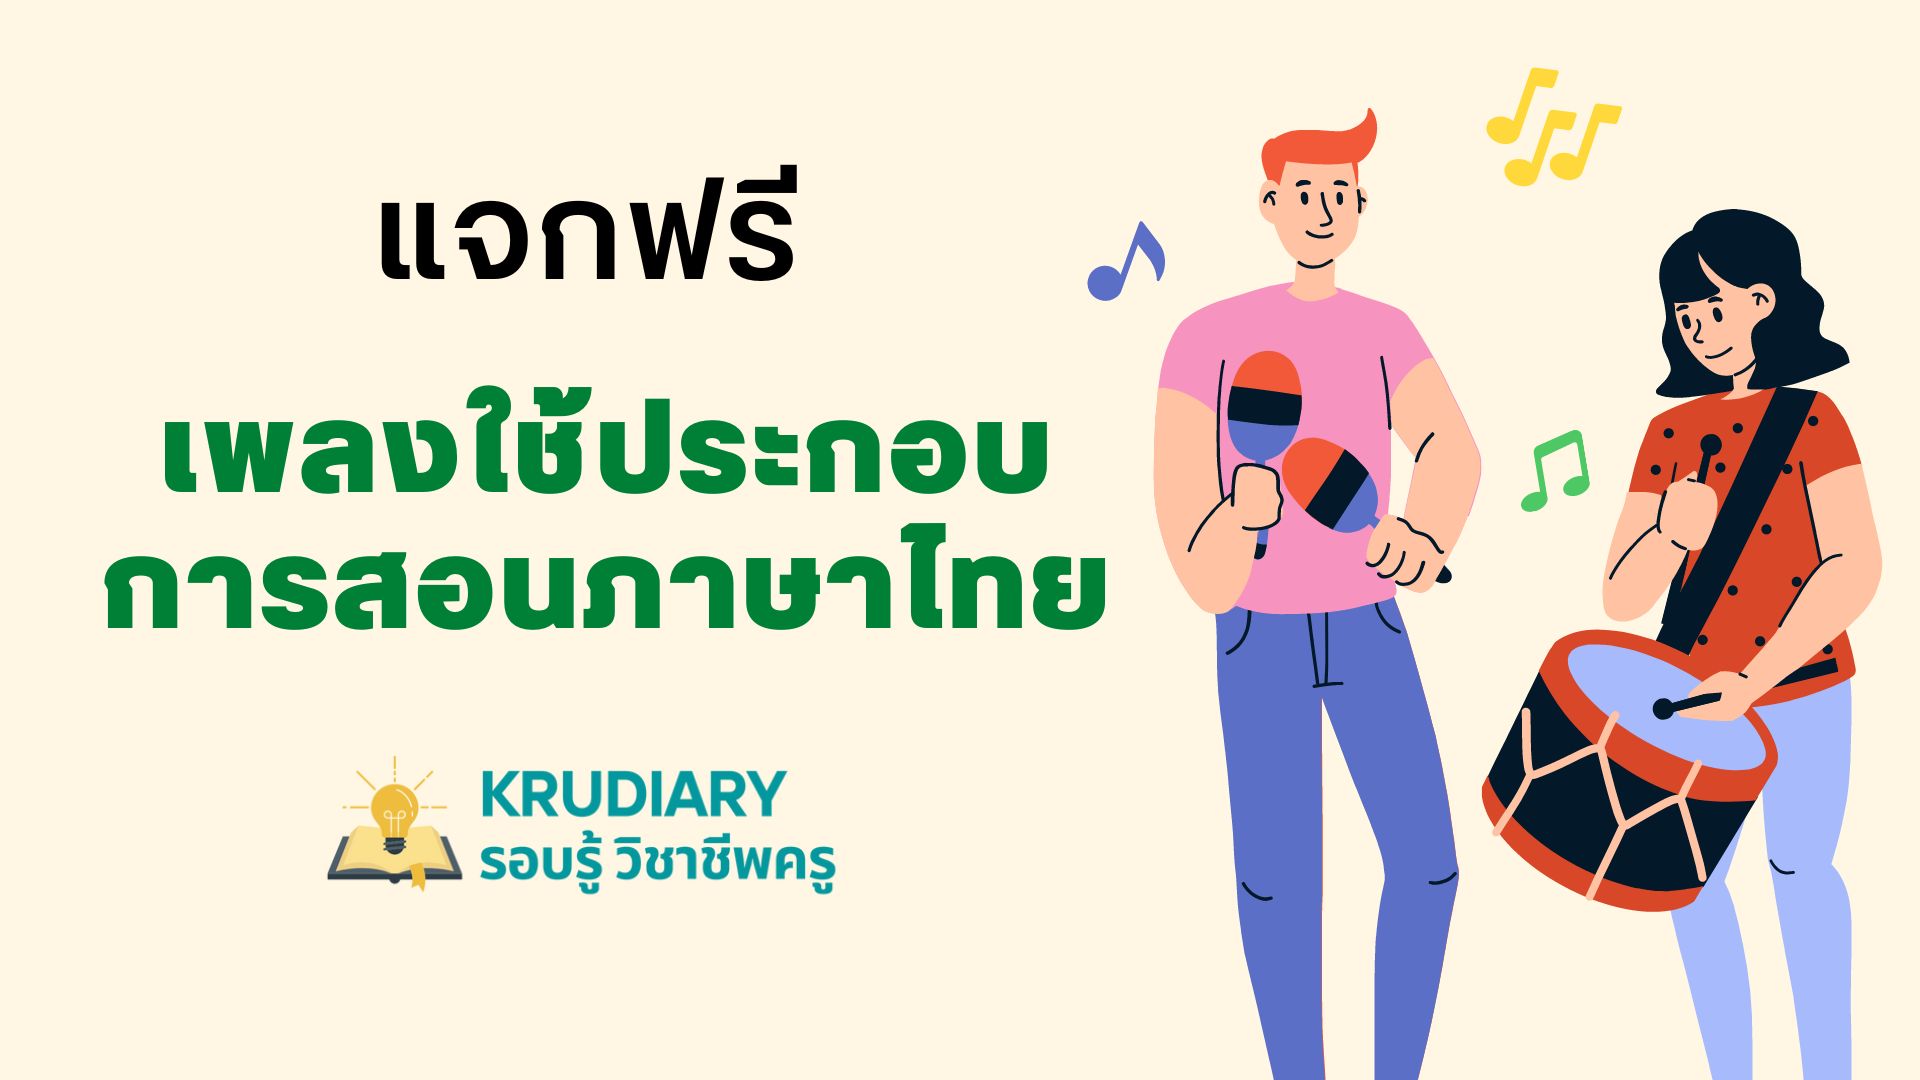 แจกฟรี เพลงใช้ประกอบการสอนภาษาไทย